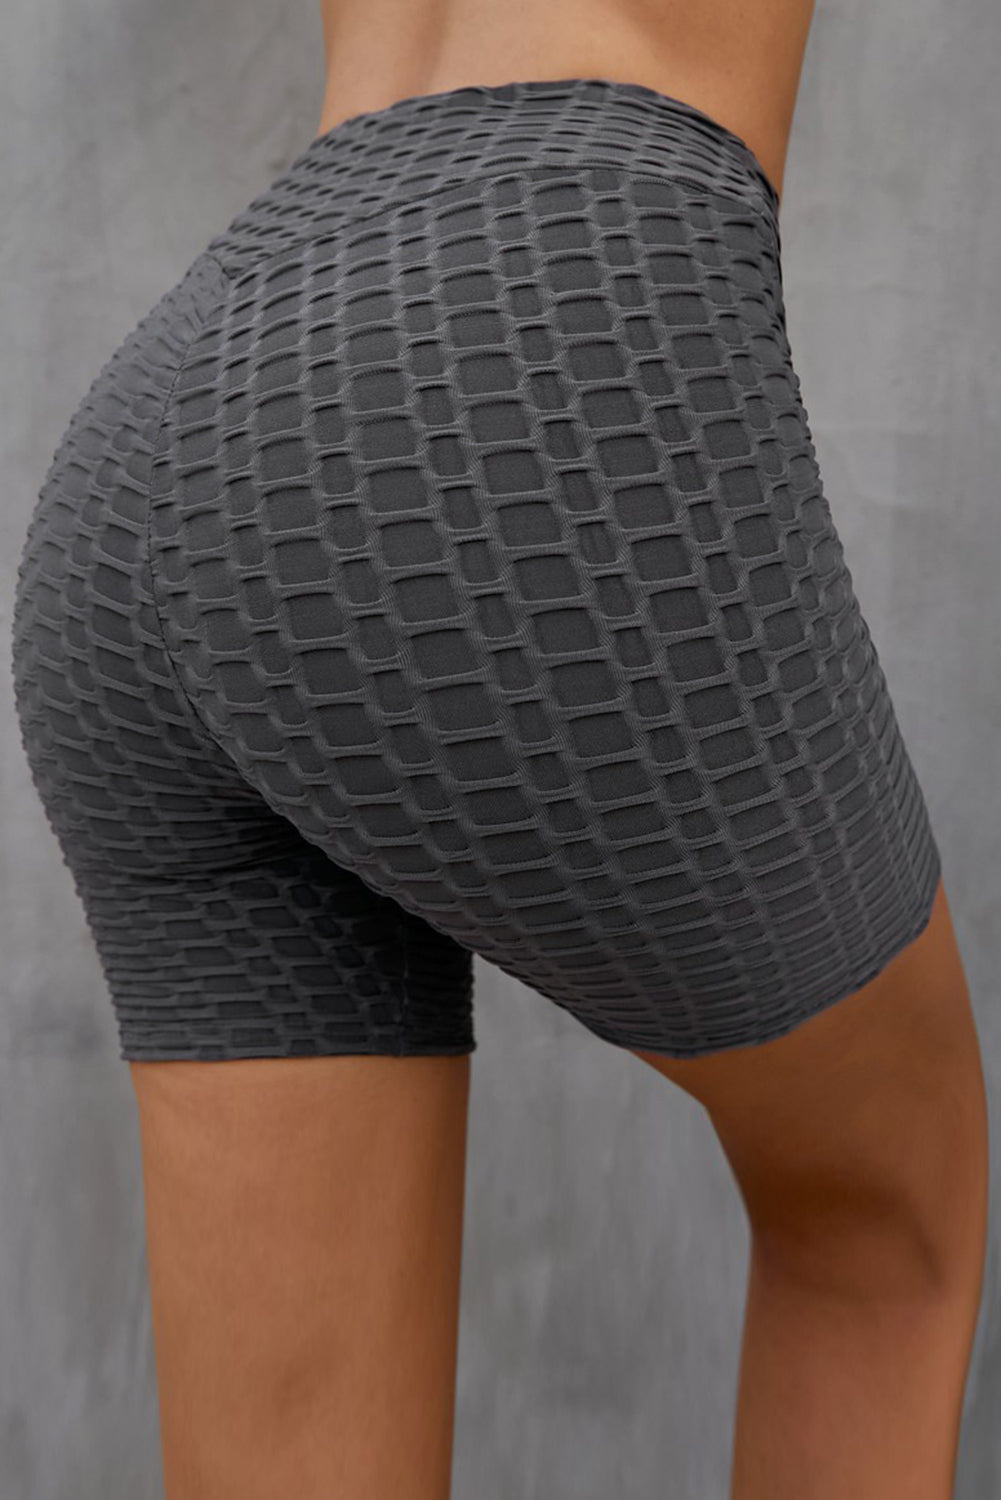 Textured High Waisted Biker Shorts - DromedarShop.com Online Boutique